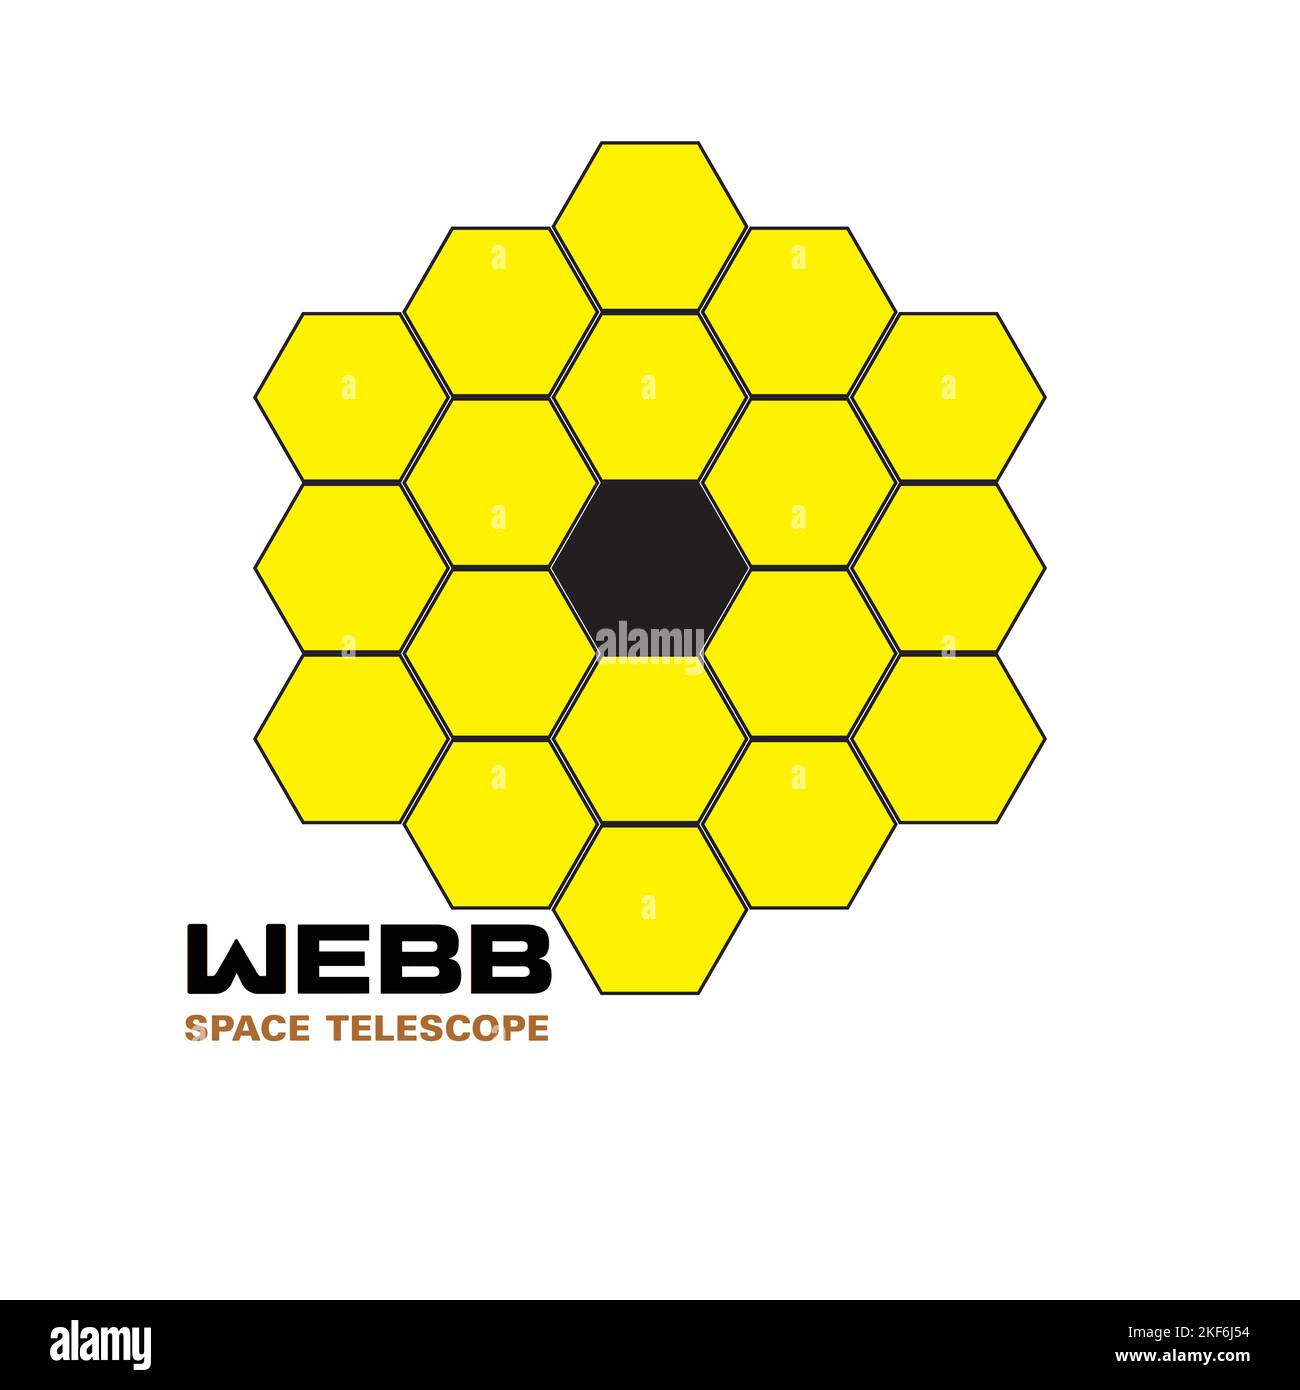 Illustrazione grafica vettoriale del telescopio spaziale James Webb. Astronomia. Design piatto. EPS10. Illustrazione Vettoriale